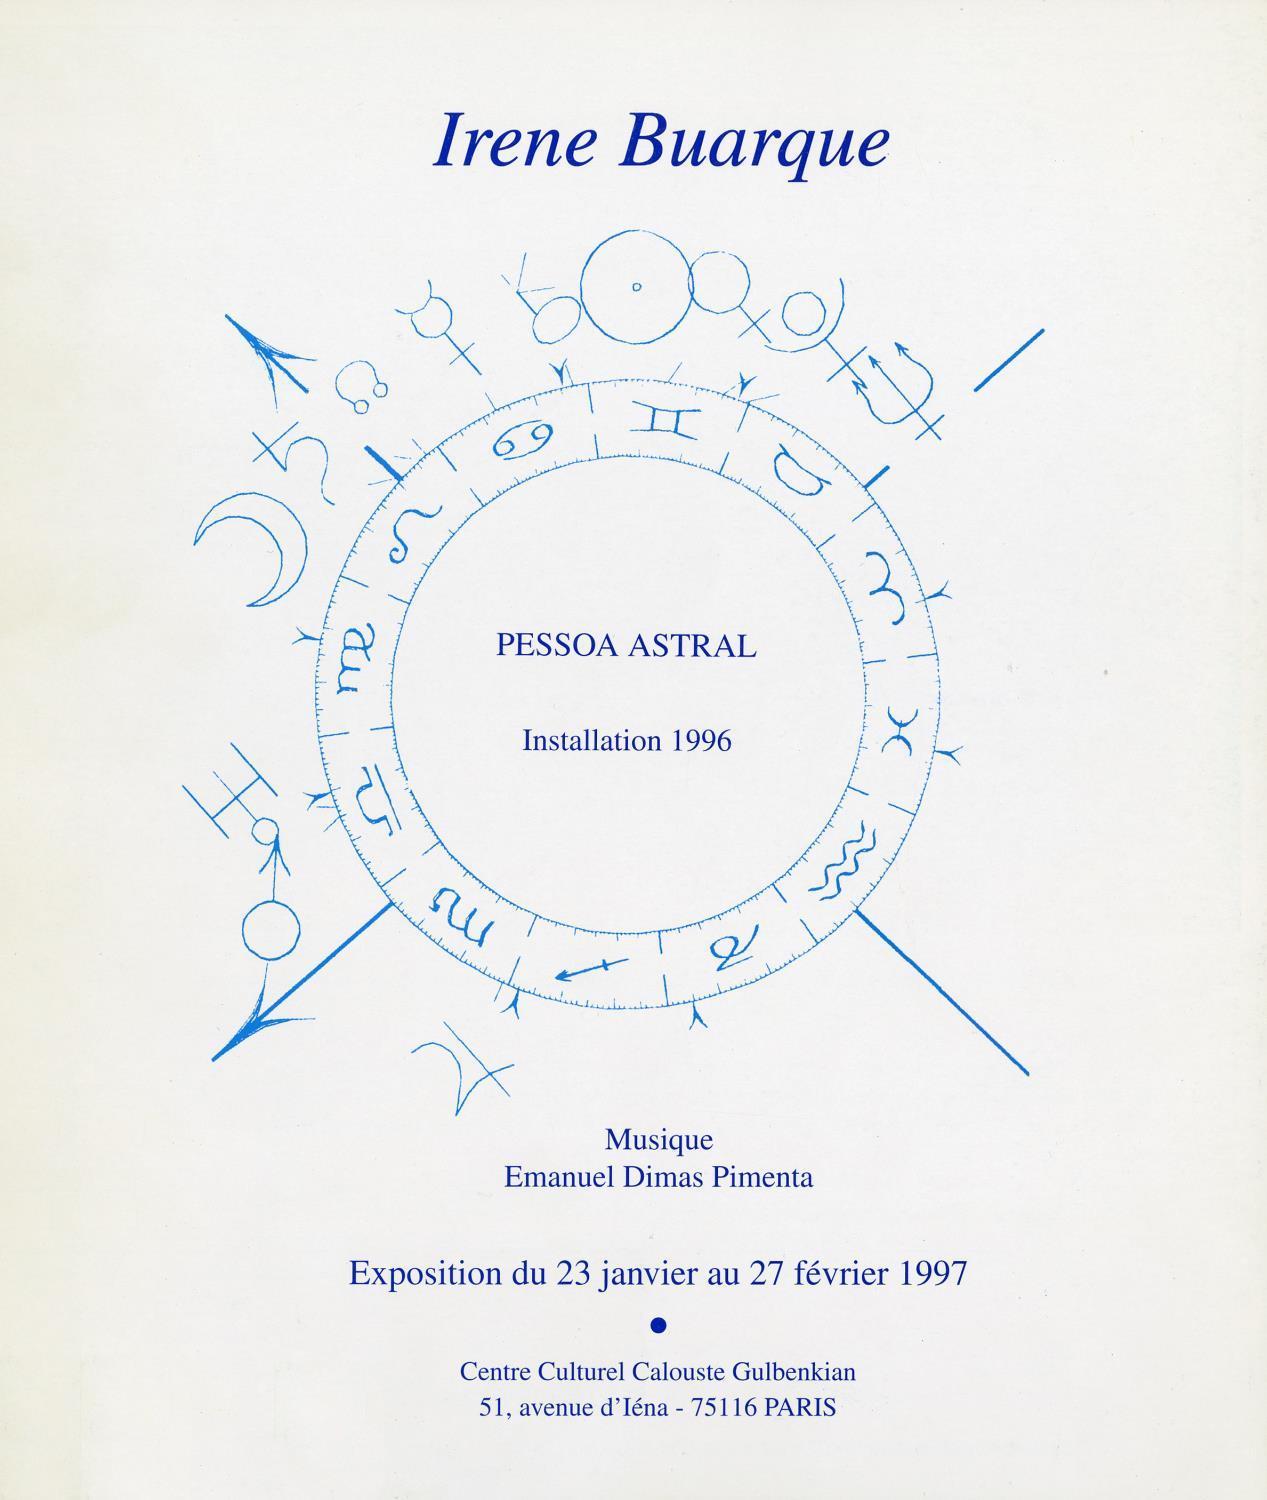 Irene Buarque. Pessoa Astral. Installation 1996